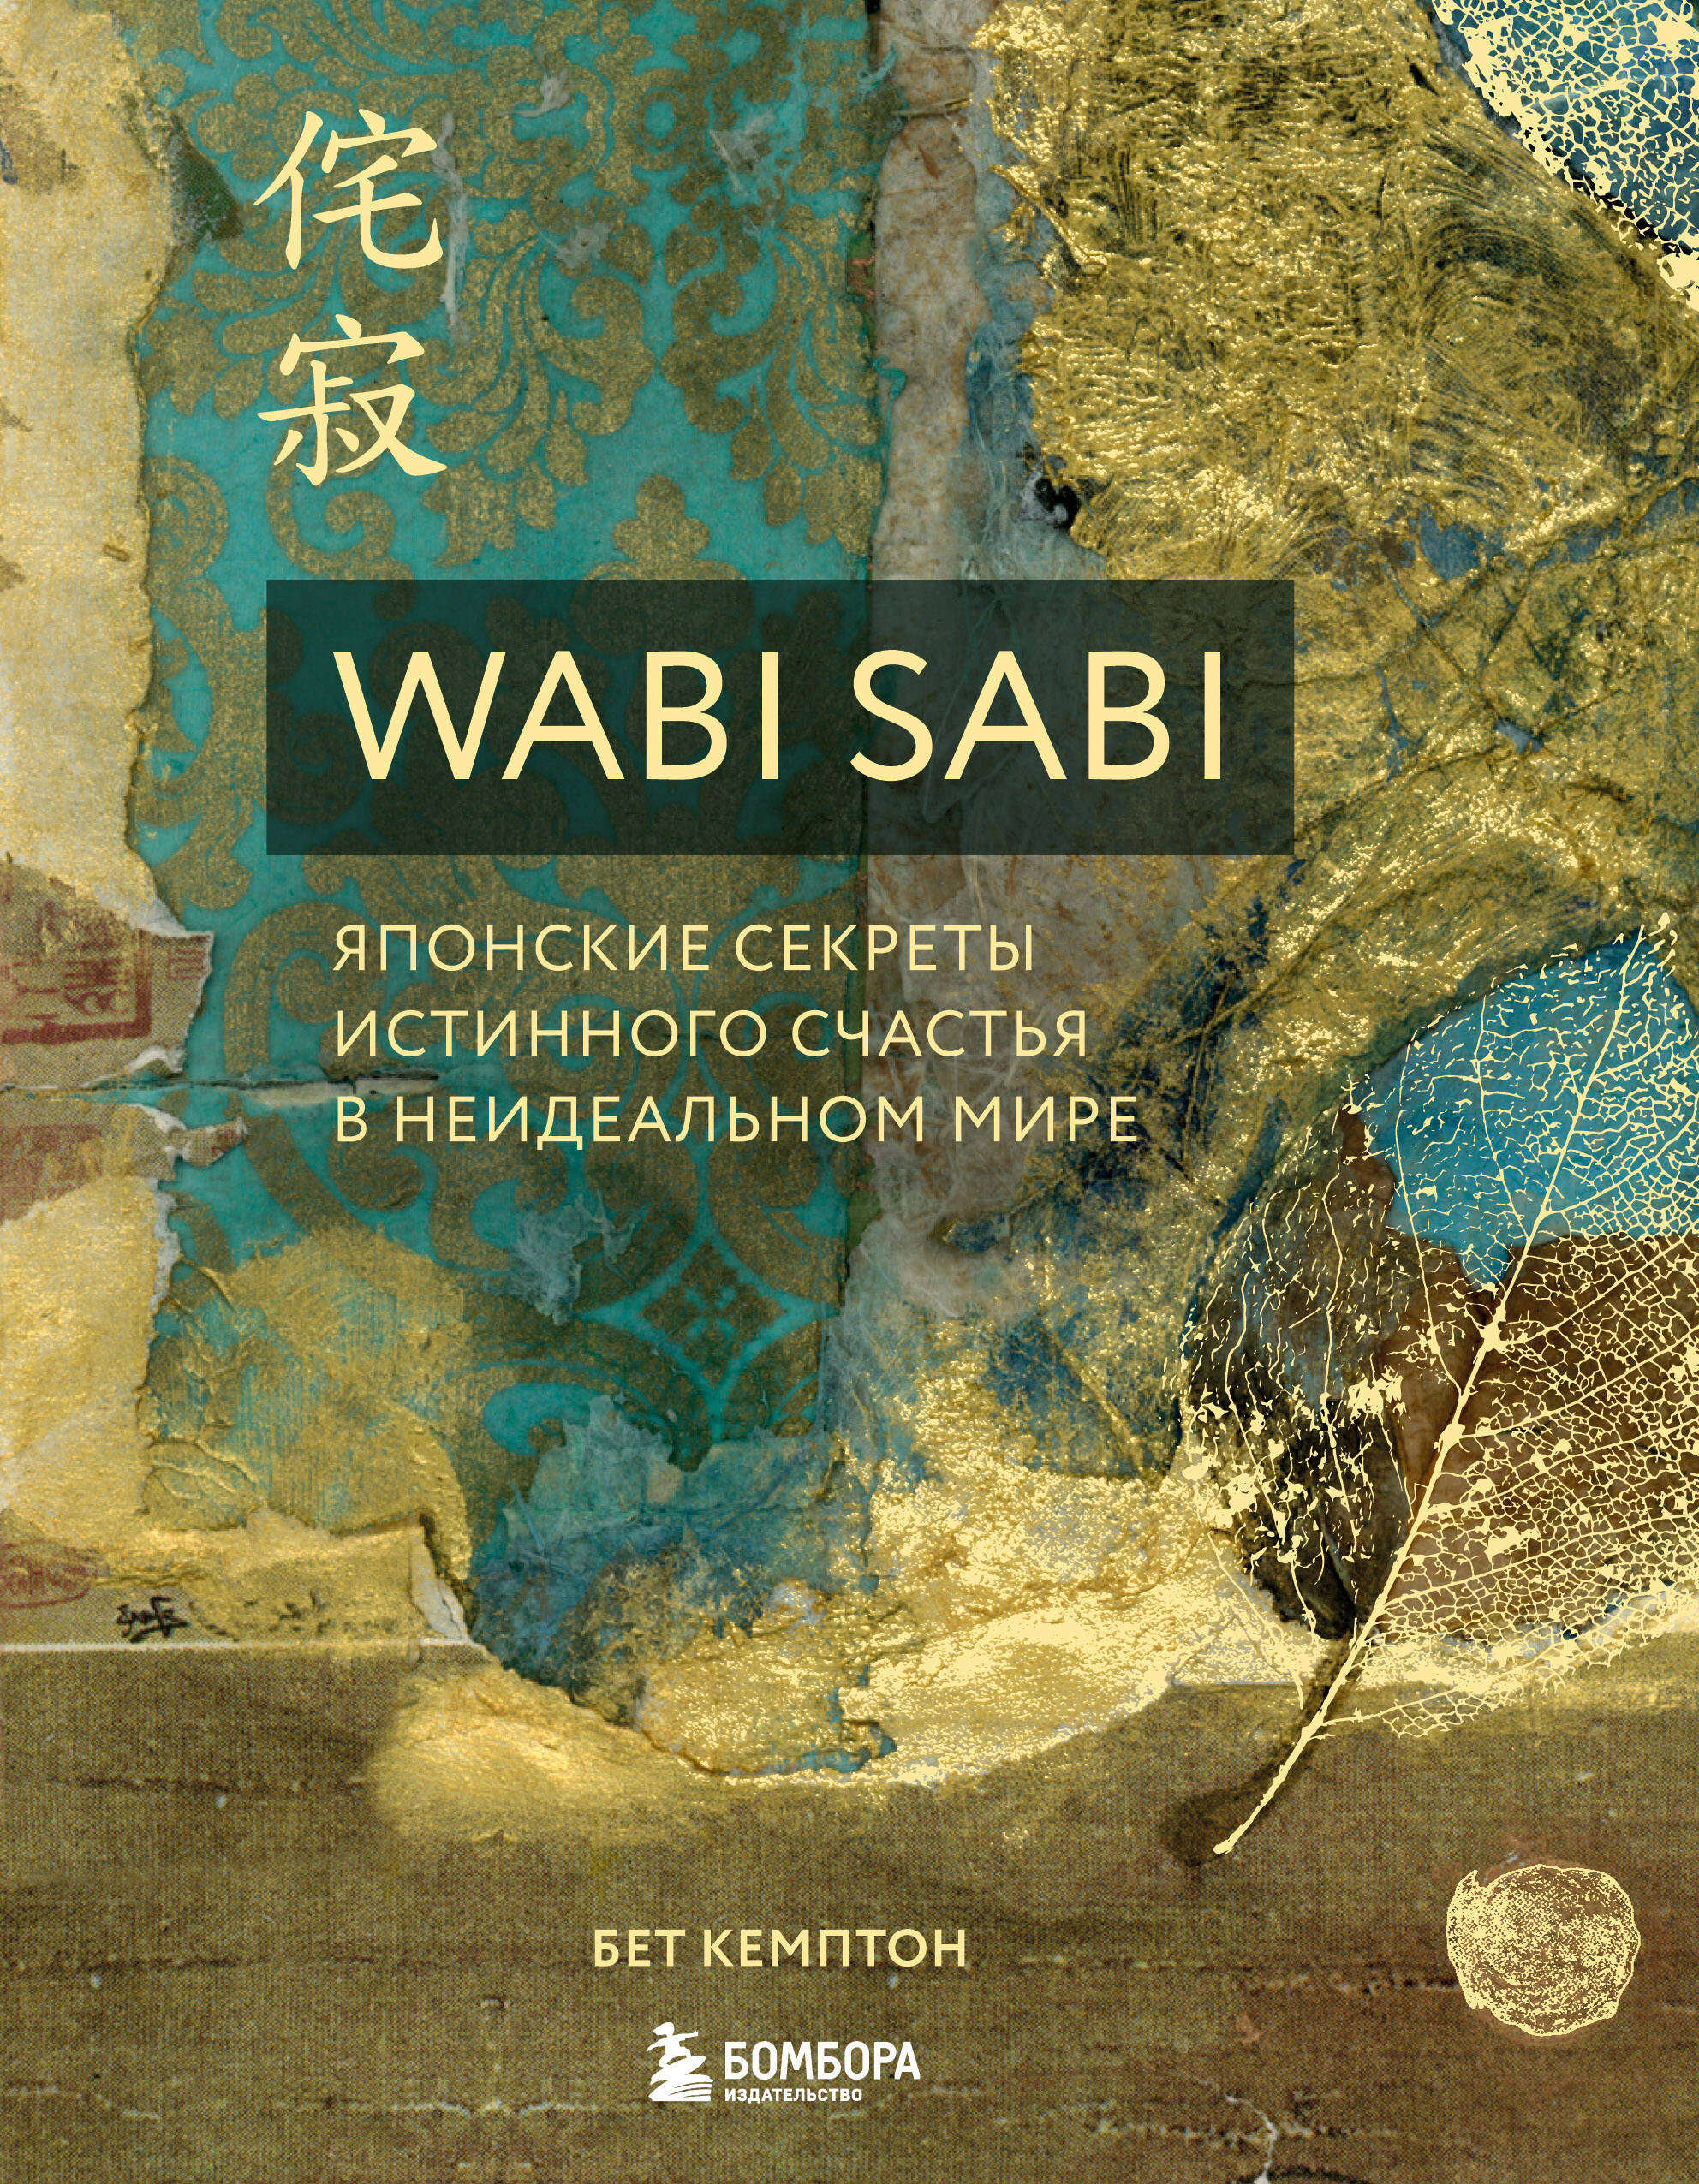 Кемптон Бет Wabi Sabi. Японские секреты истинного счастья в неидеальном мире